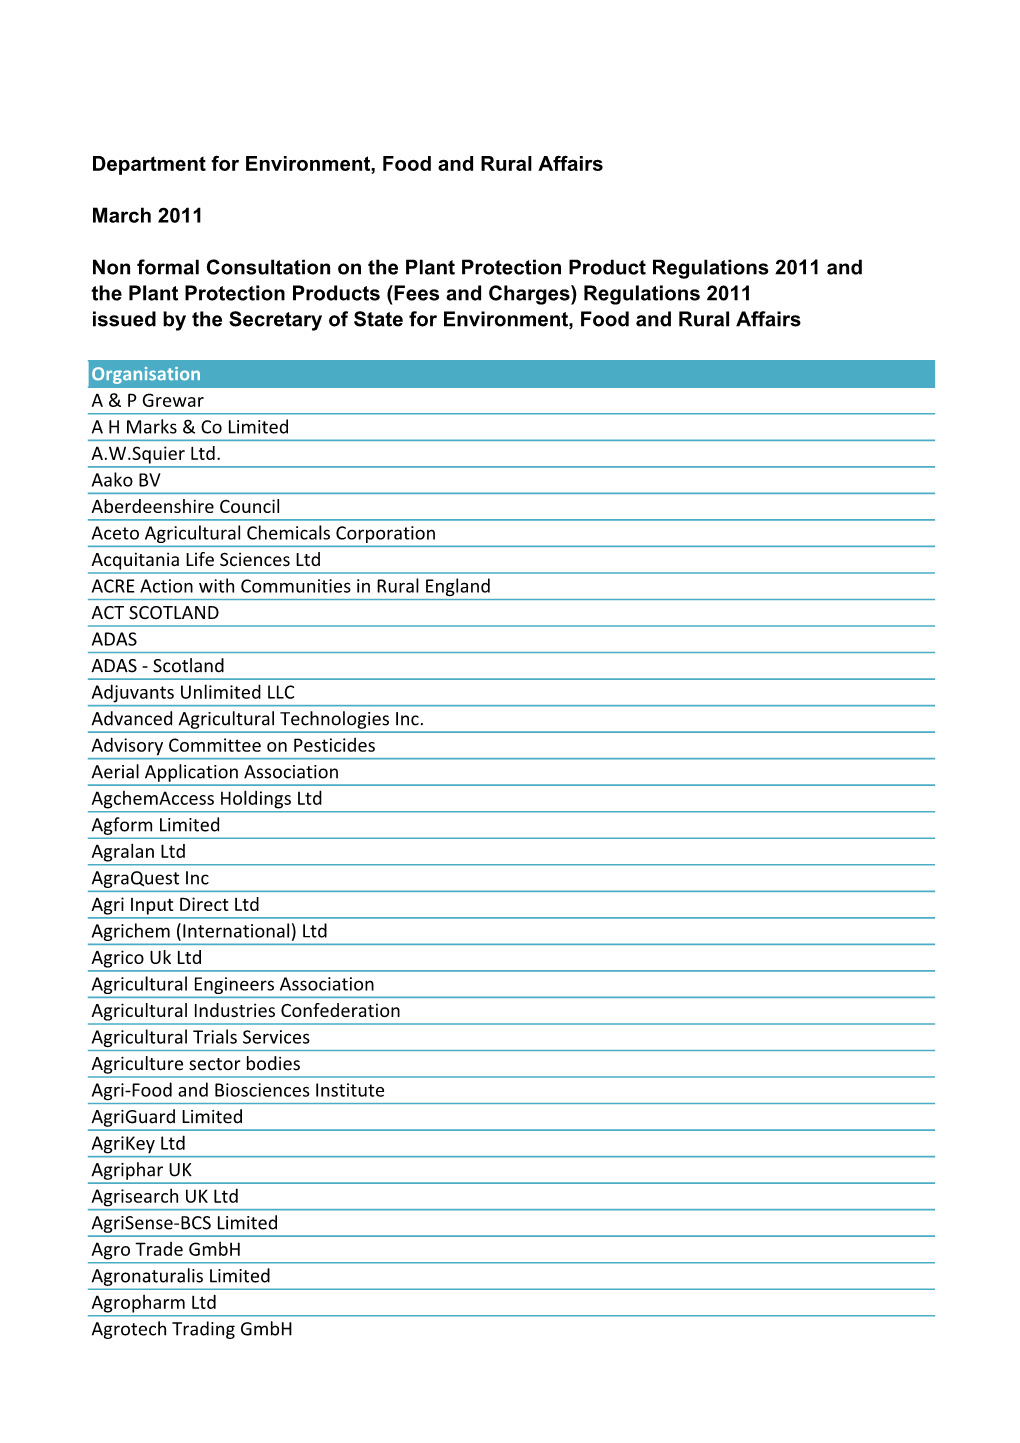 Pesticides Consultation 2011 List of Consultees